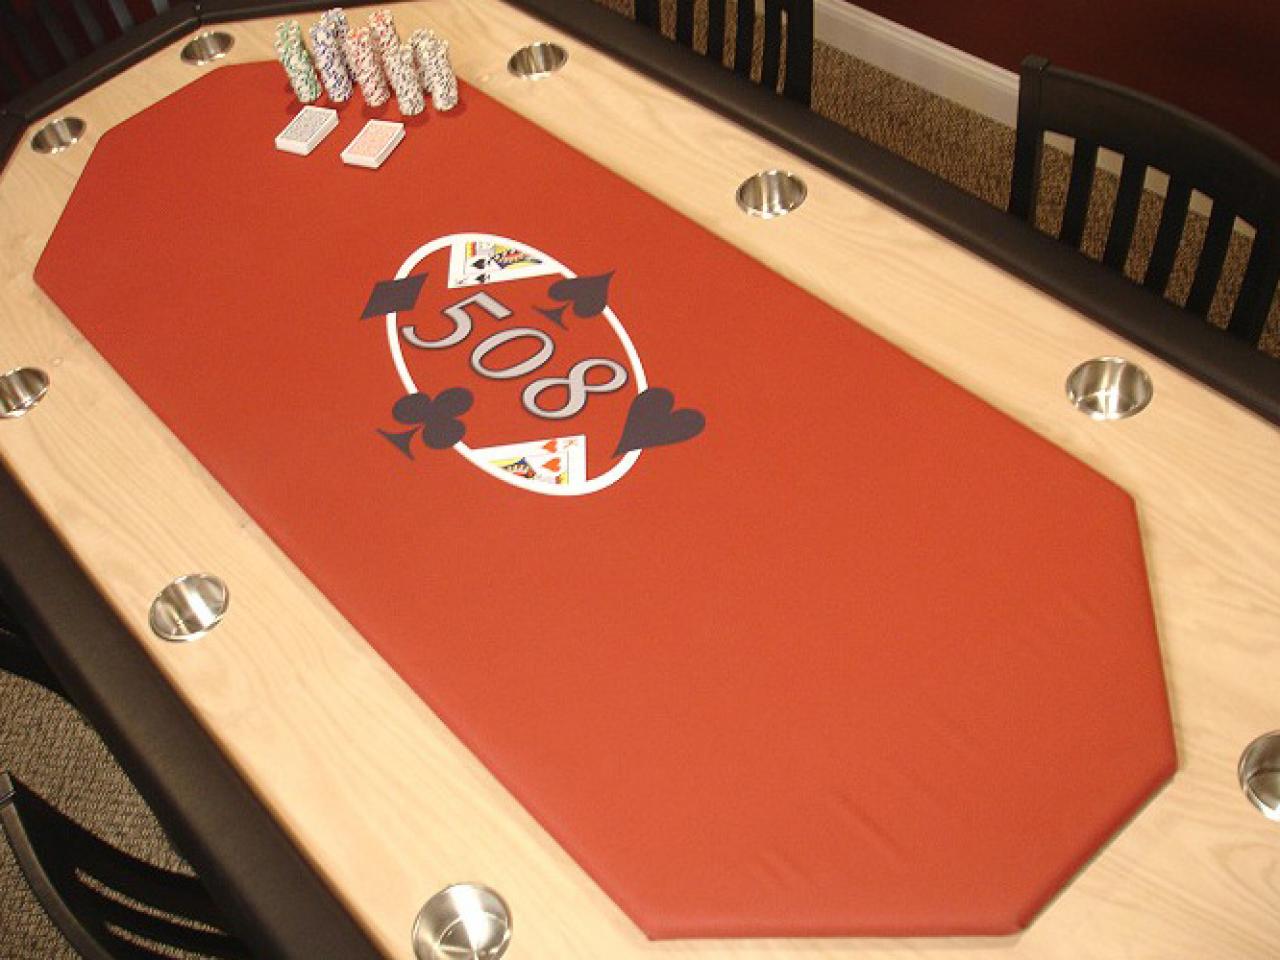 Custom poker tables